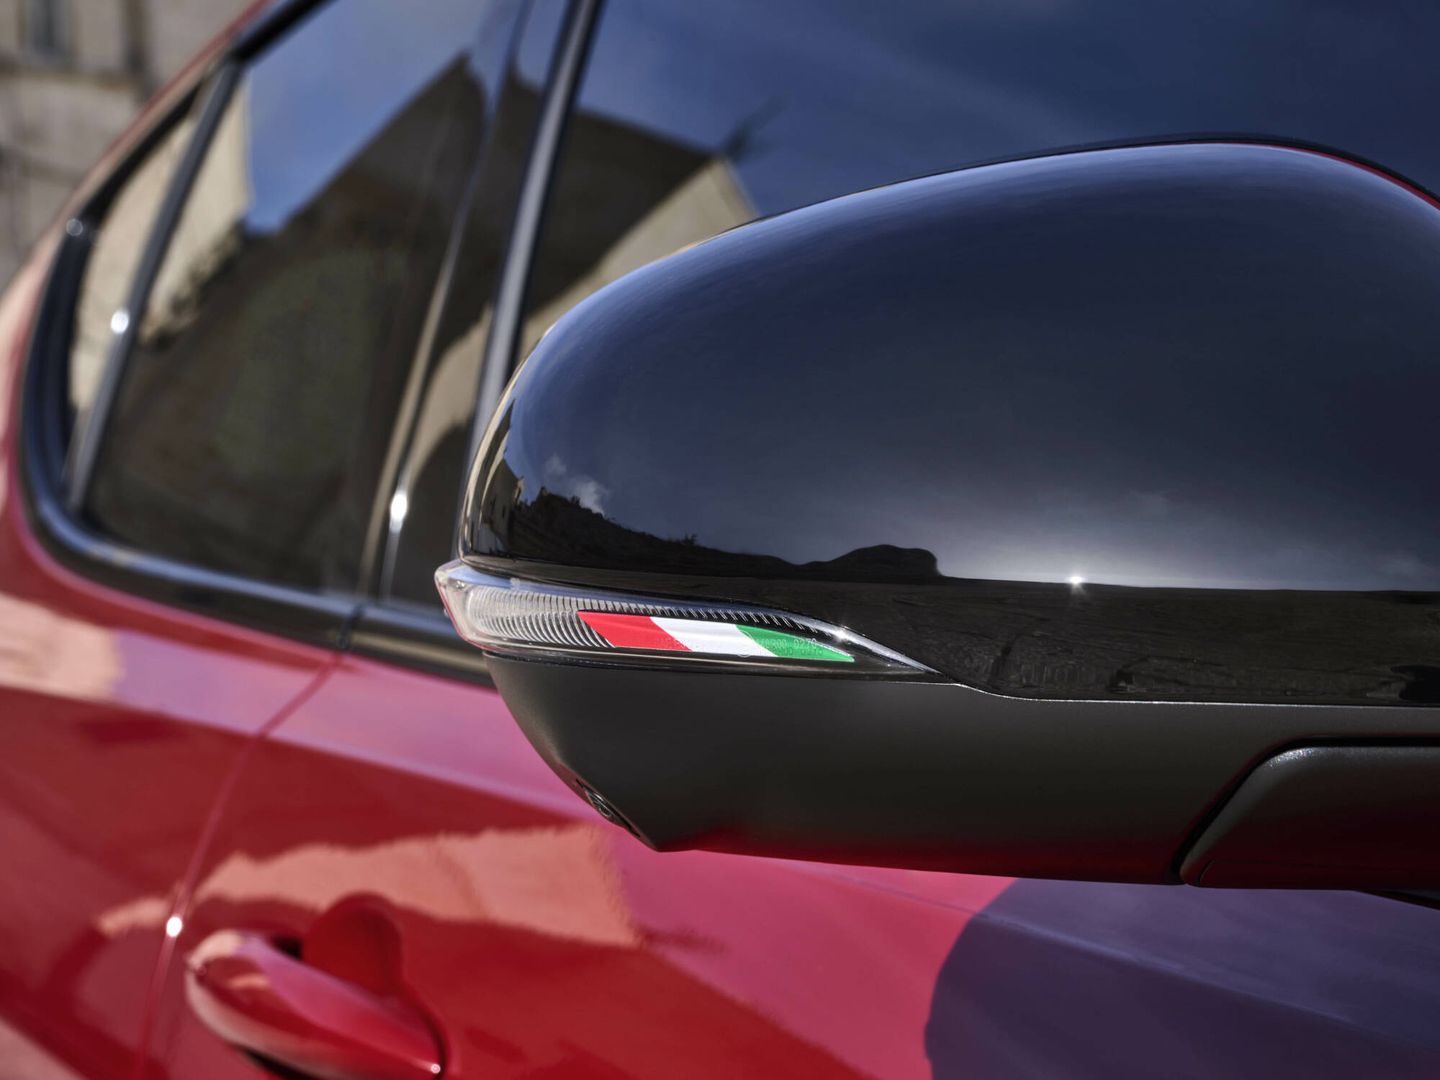 Las carcasas de los retrovisores están personalizadas con los colores de la bandera italiana.